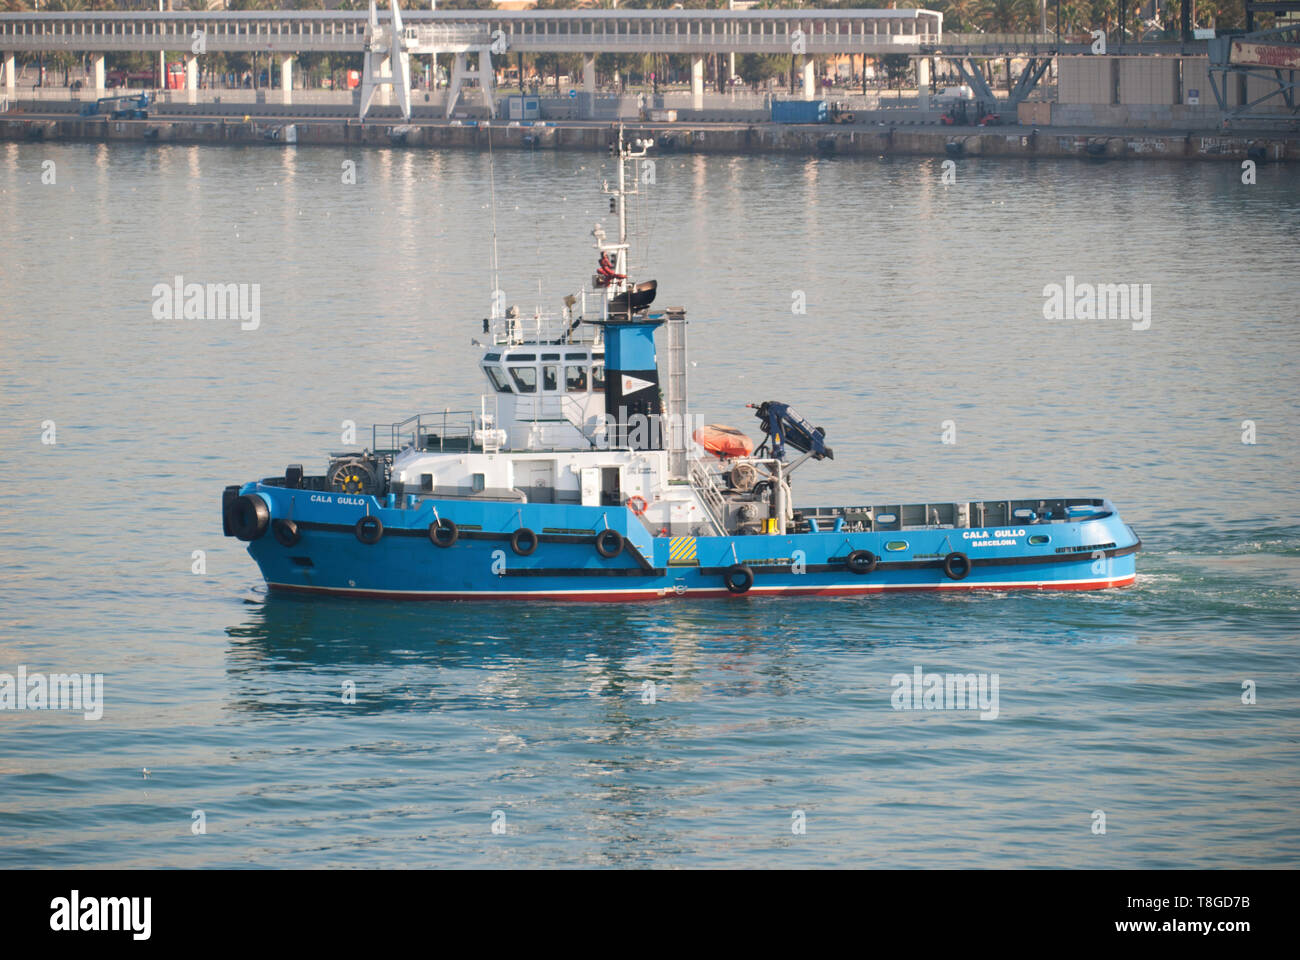 Tug boat Cala Gullo naviguant dans les eaux du port de Barcelone. Banque D'Images